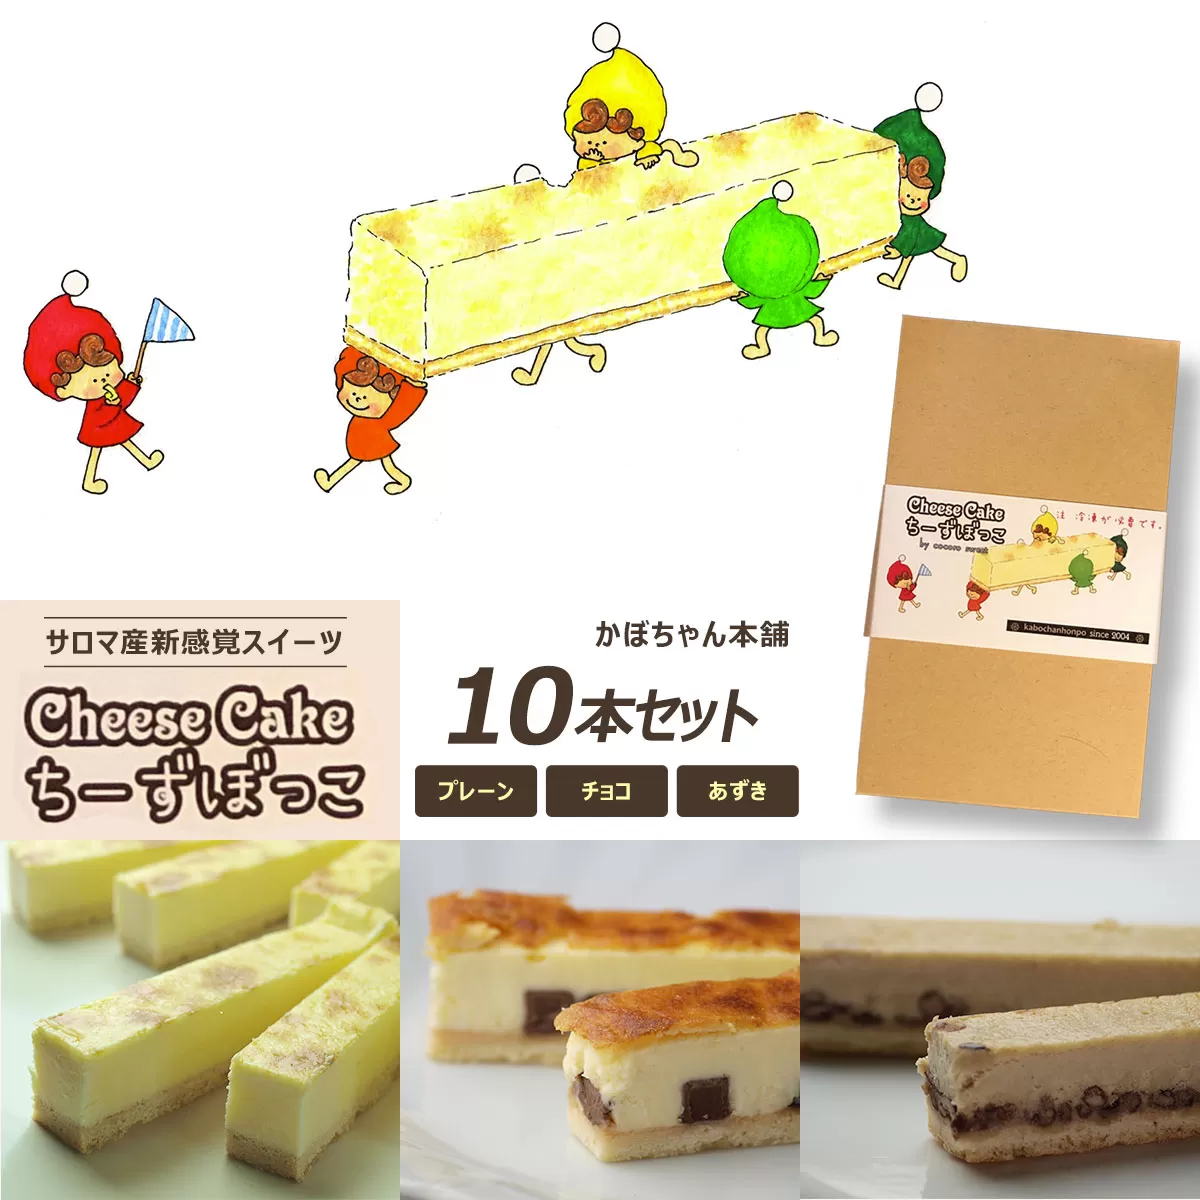 サロマ産新感覚スイーツ「チーズぼっこ」(プレーン・チョコ・あずき)10本 セット SRML006